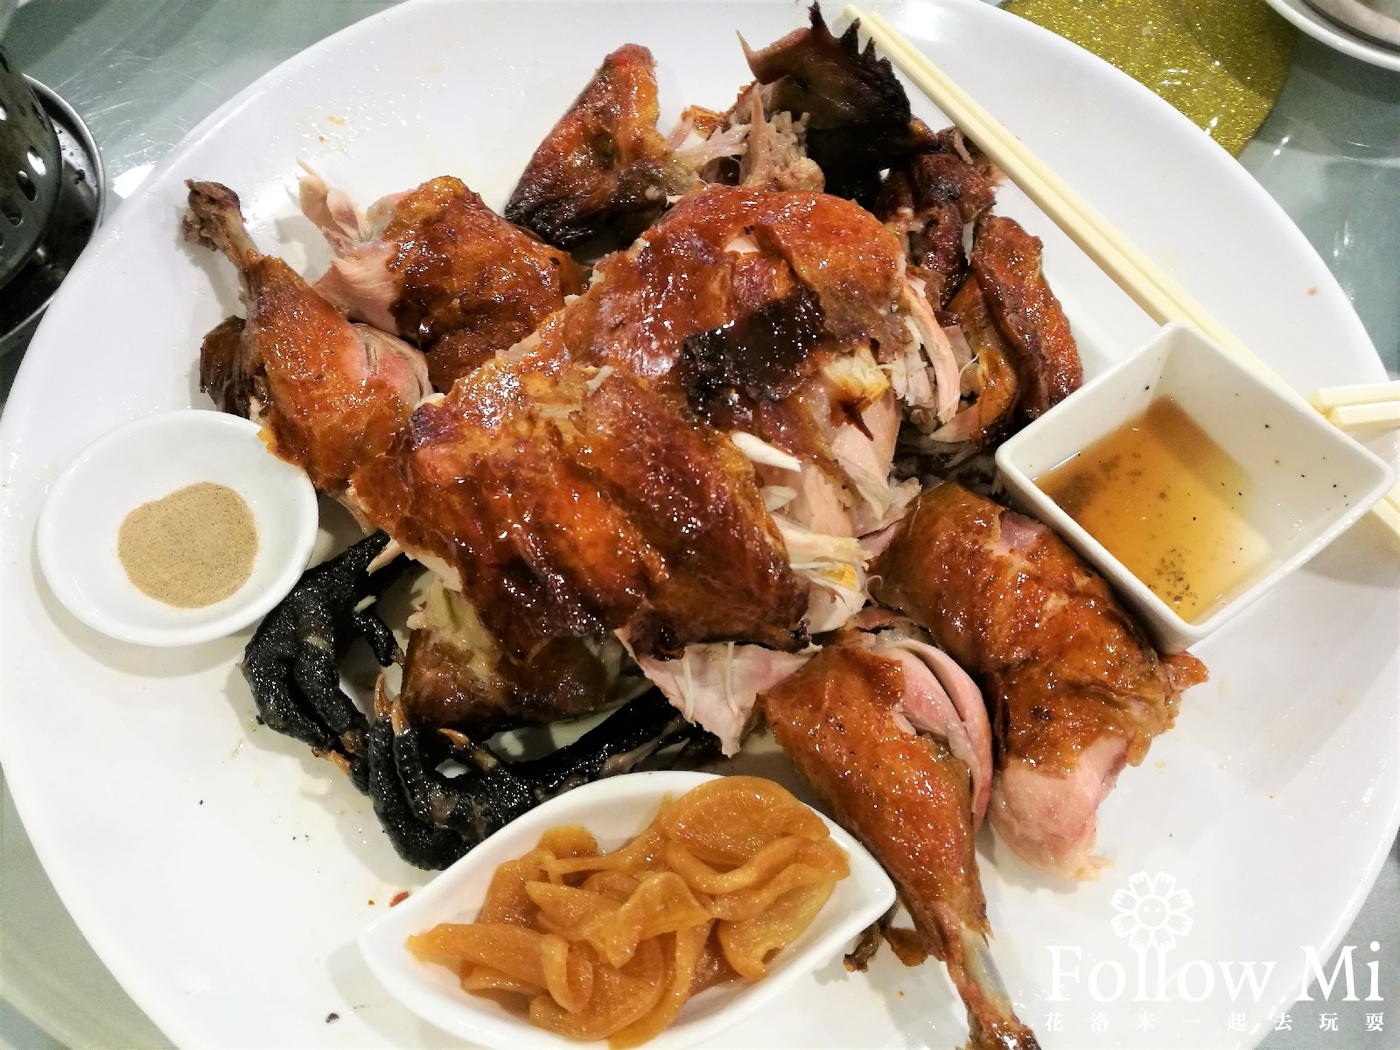 新竹美食,東區,風城奇雞,風城奇雞手作料理